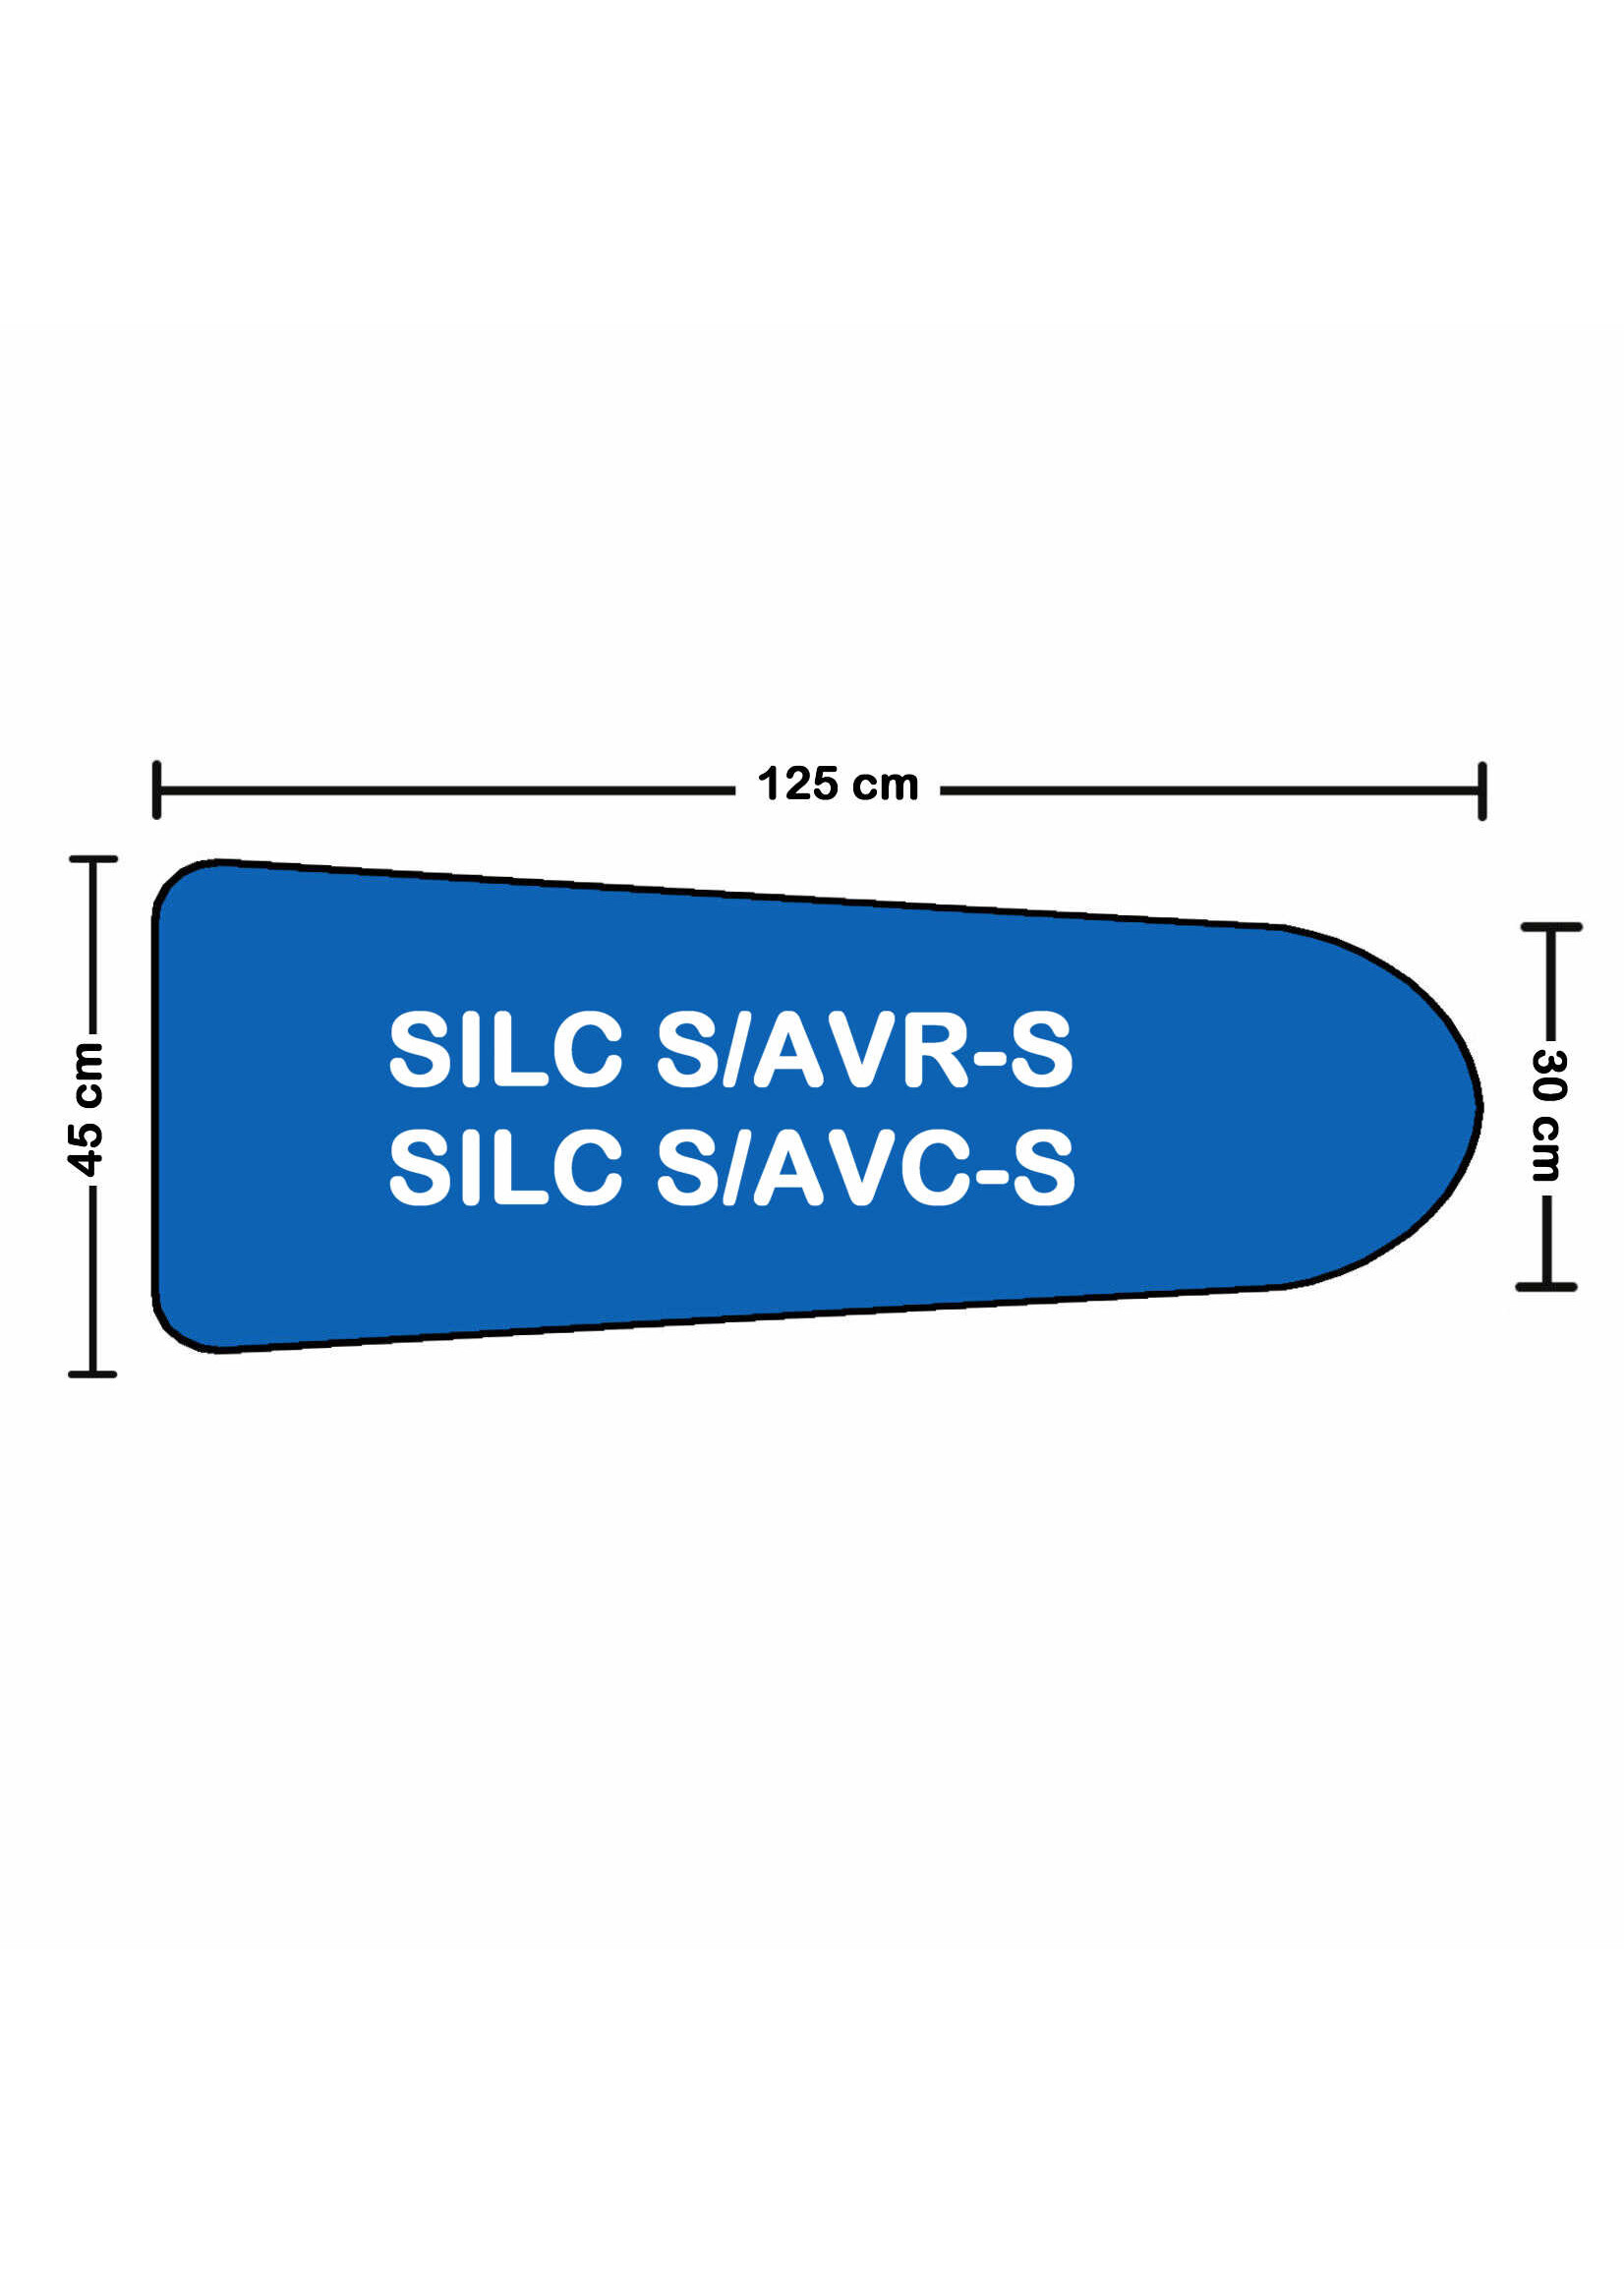 Solana Bekleding voor SILC S/AVR-S & S/AVC-S